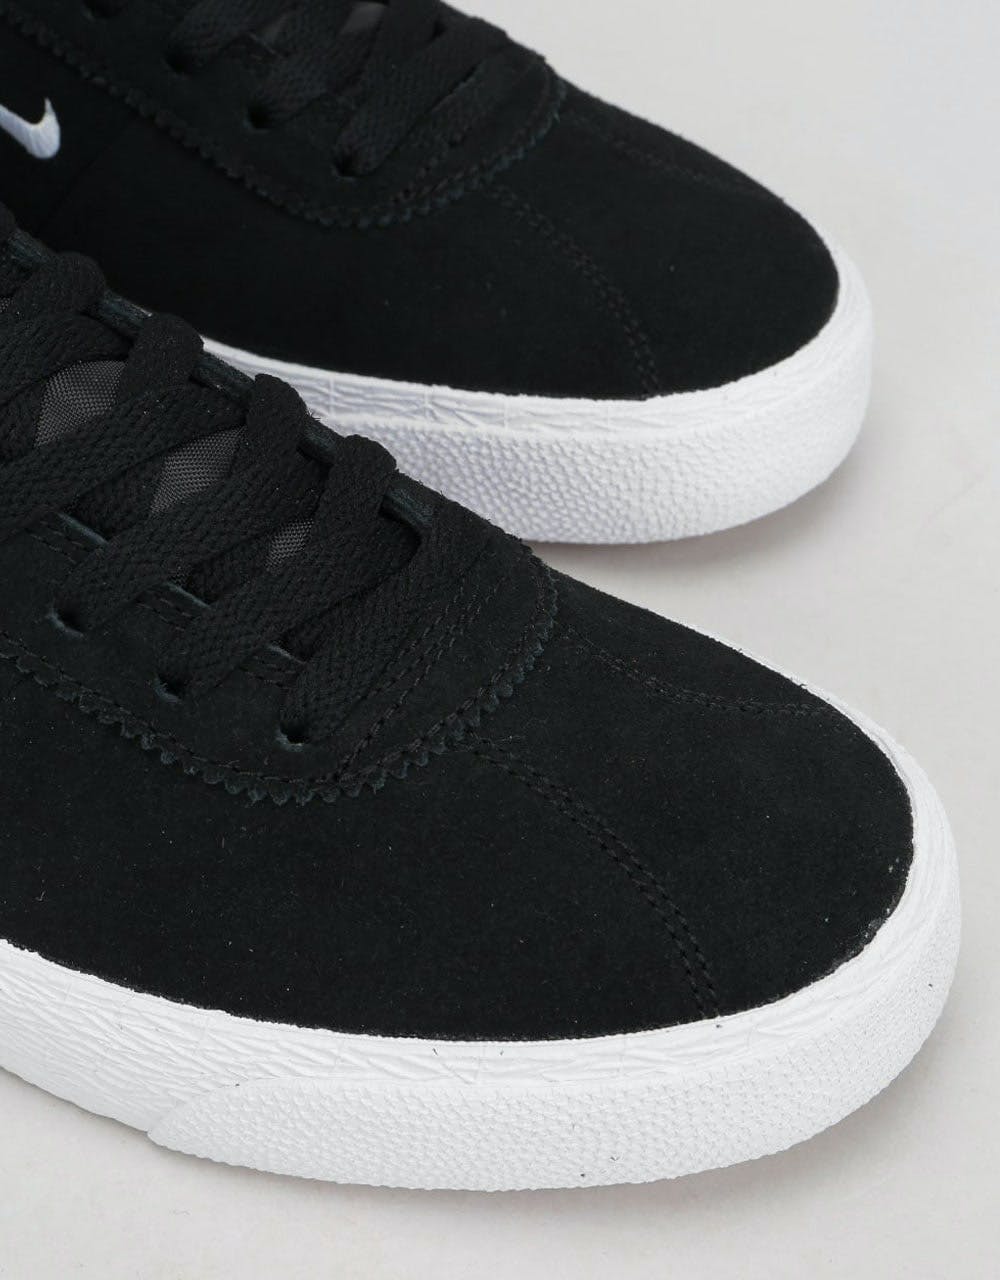 Nike SB Zoom Bruin Ultra Skate Shoes - Black/White-Gum Light Brown